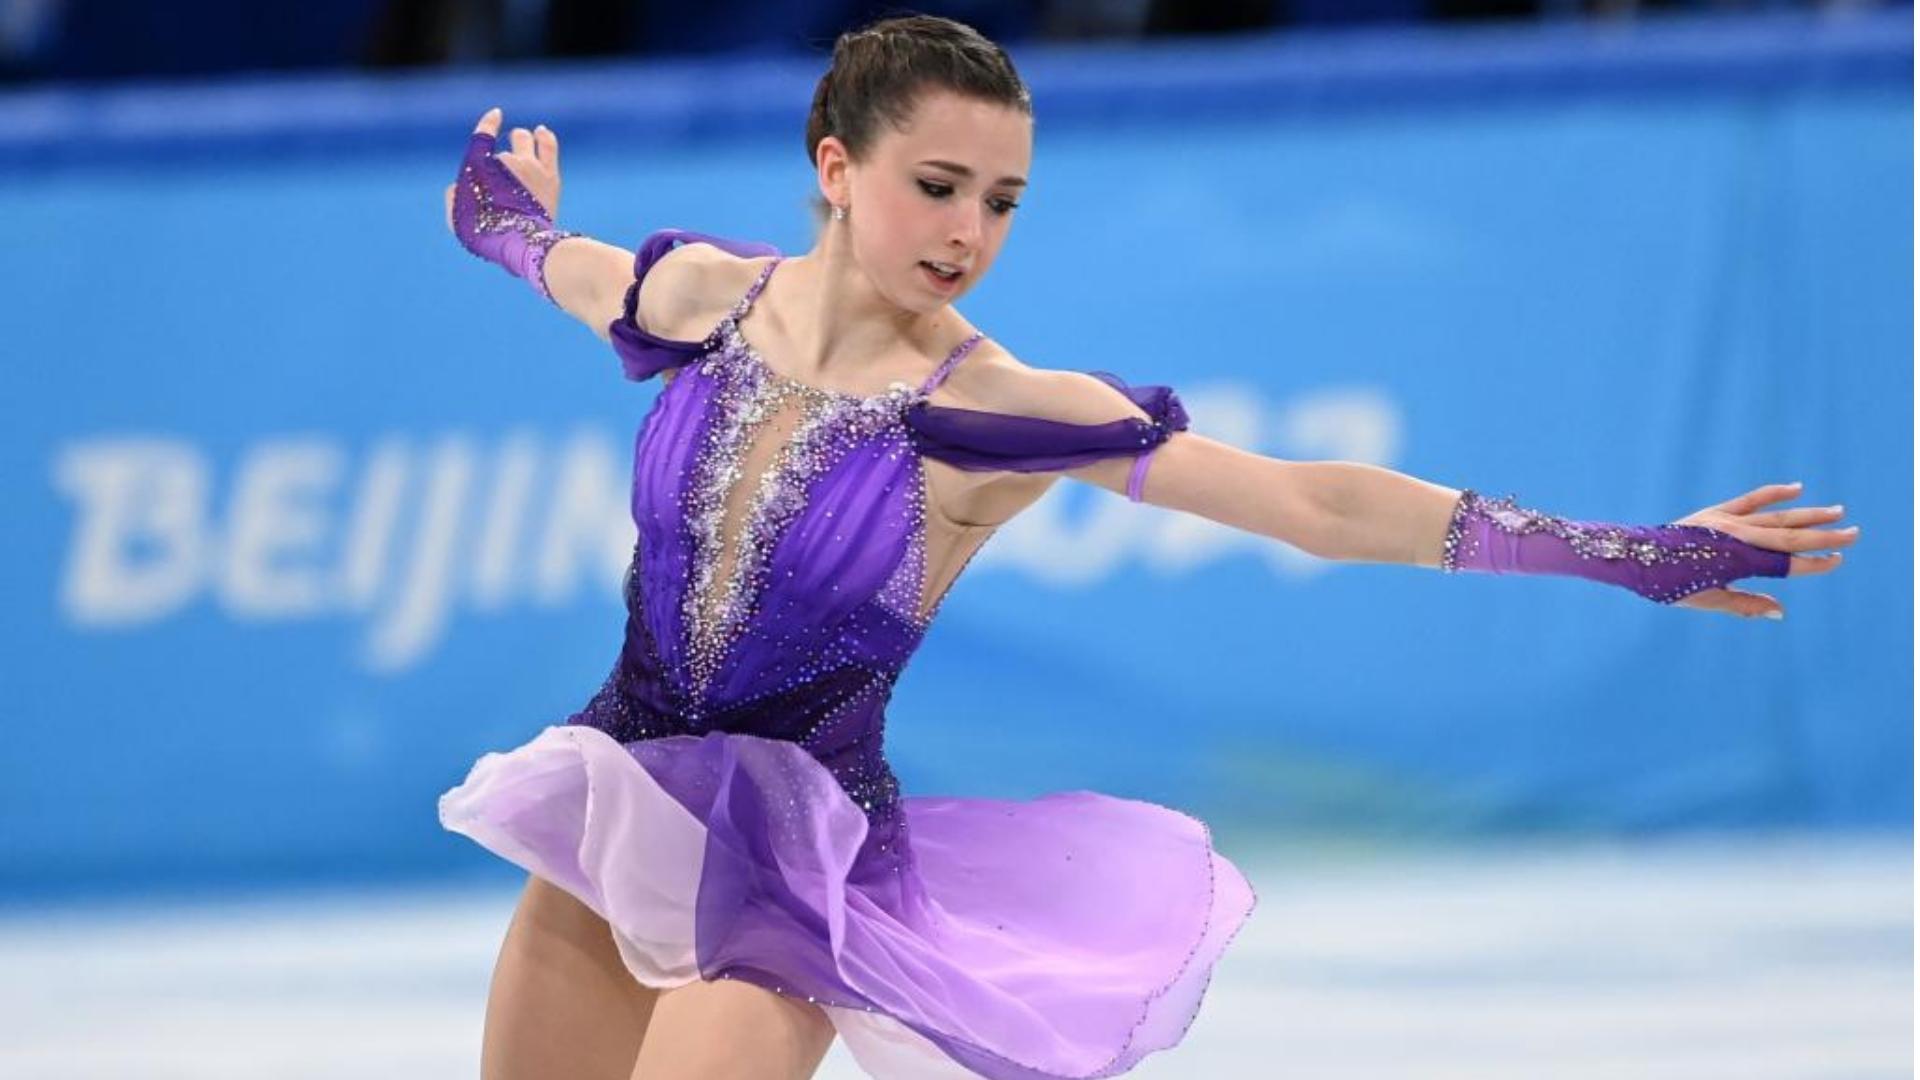 Patinadora rusa Kamila Valieva en Juegos Olímpicos de Invierno. Foto: Xinhua